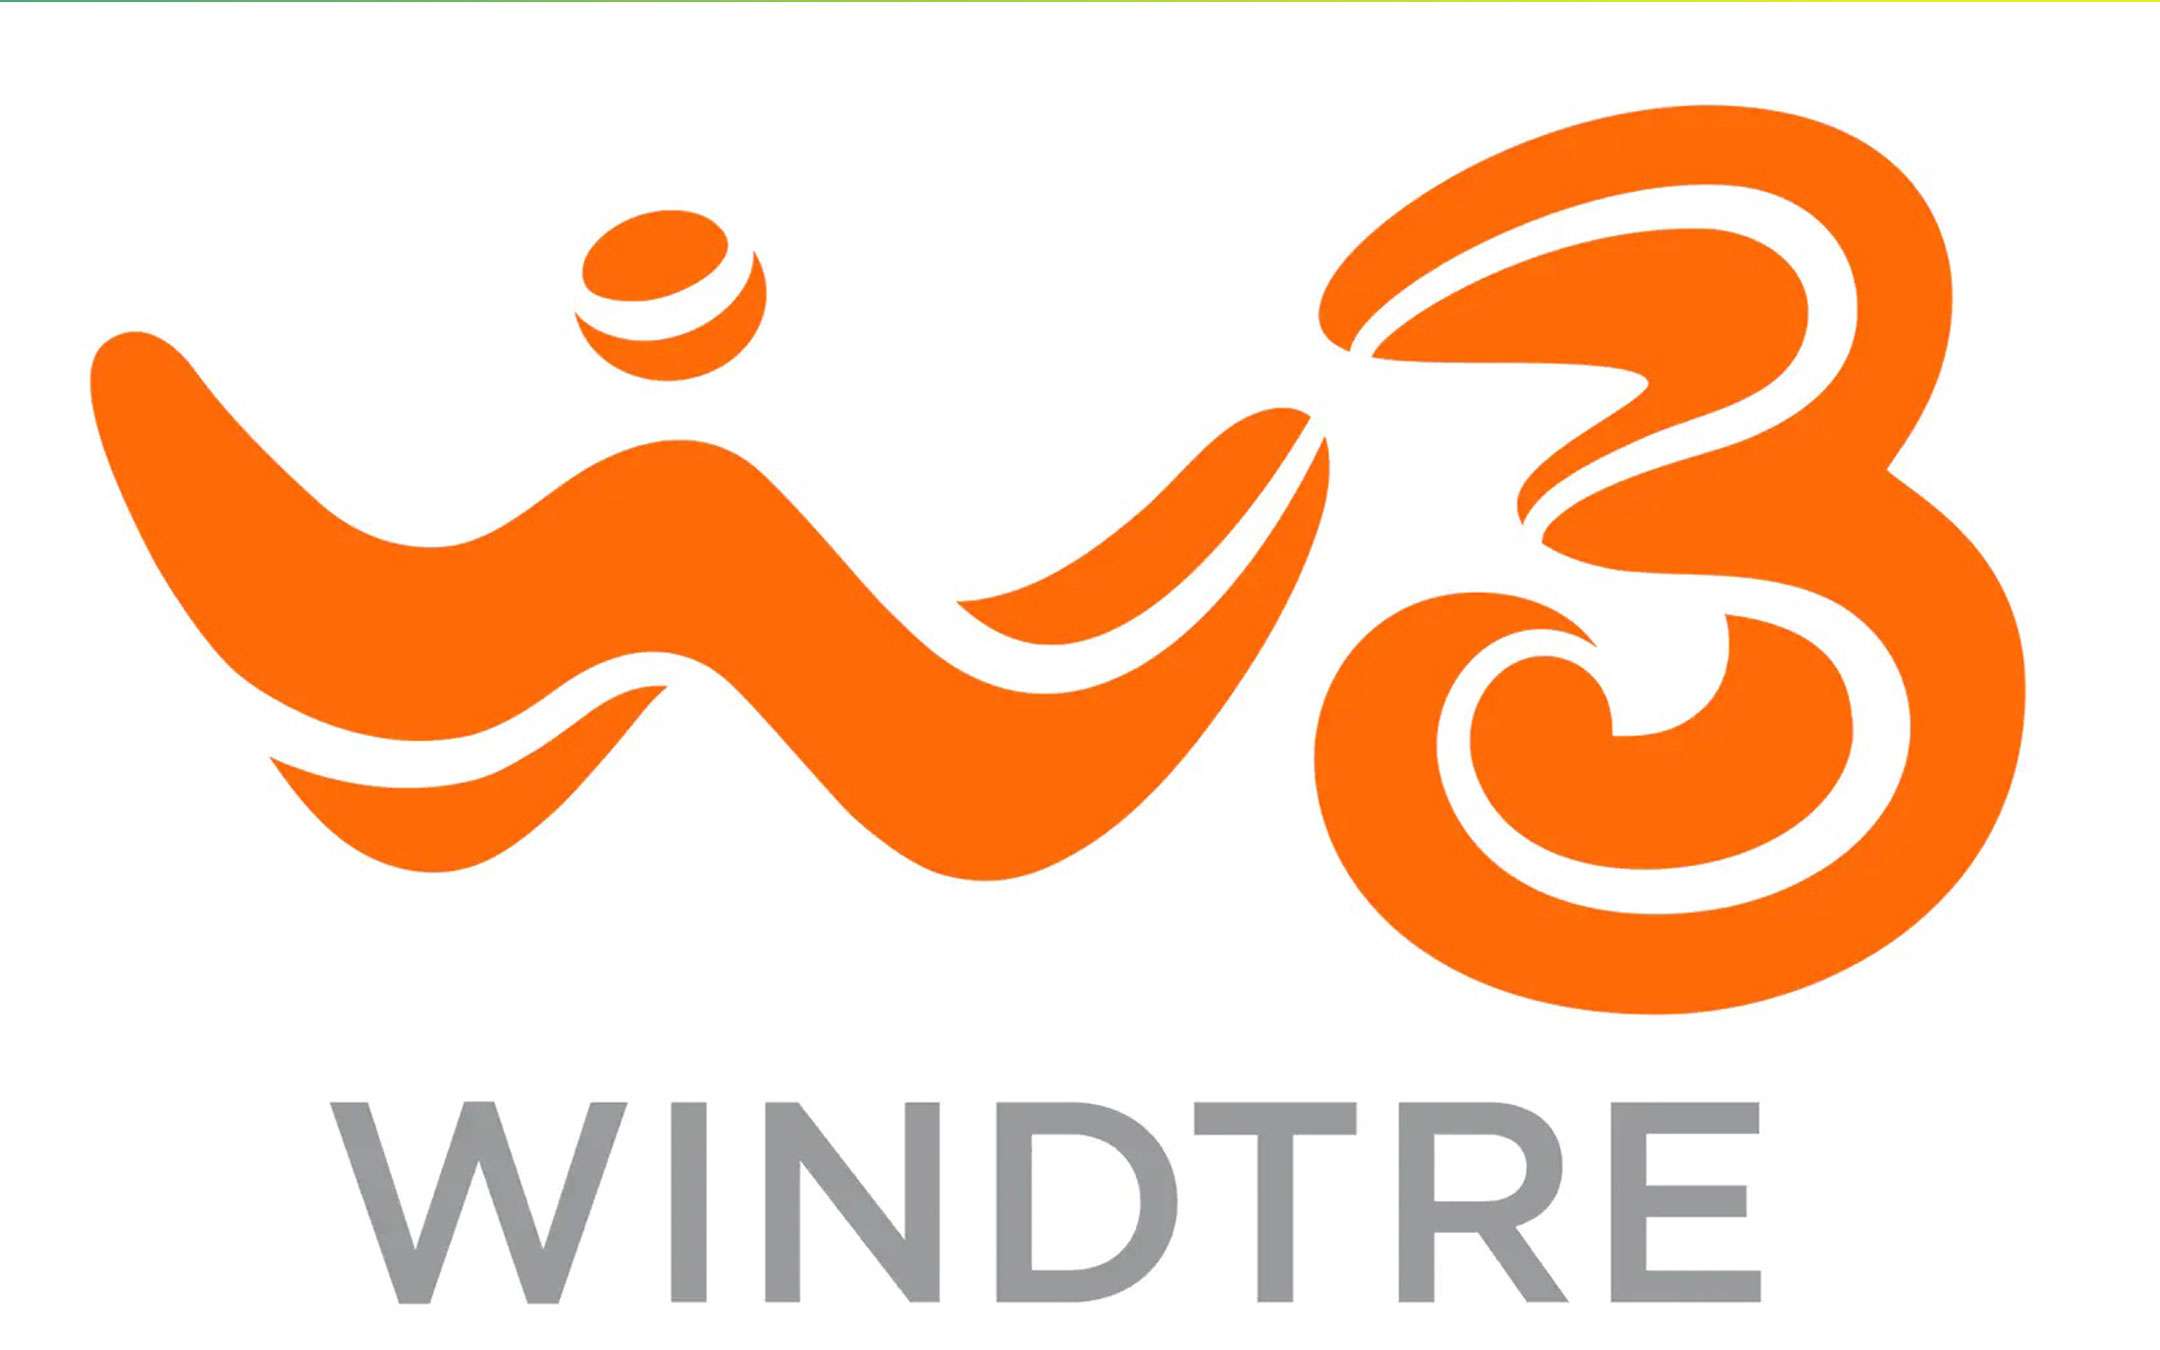 WindTre: nasce oggi ufficialmente il nuovo brand